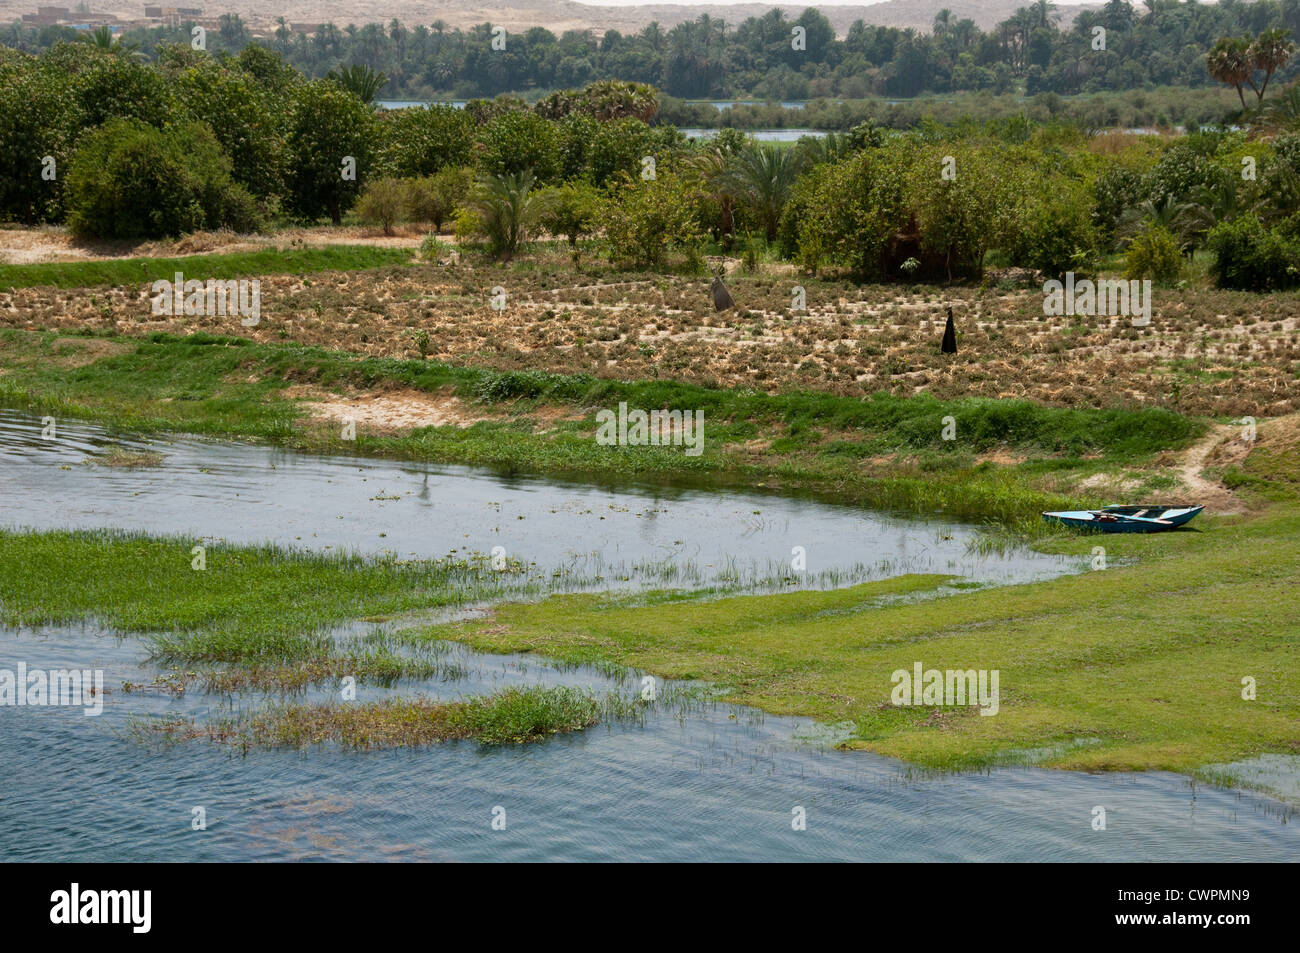 Les terres agricoles de la vallée du Nil Egypte Banque D'Images